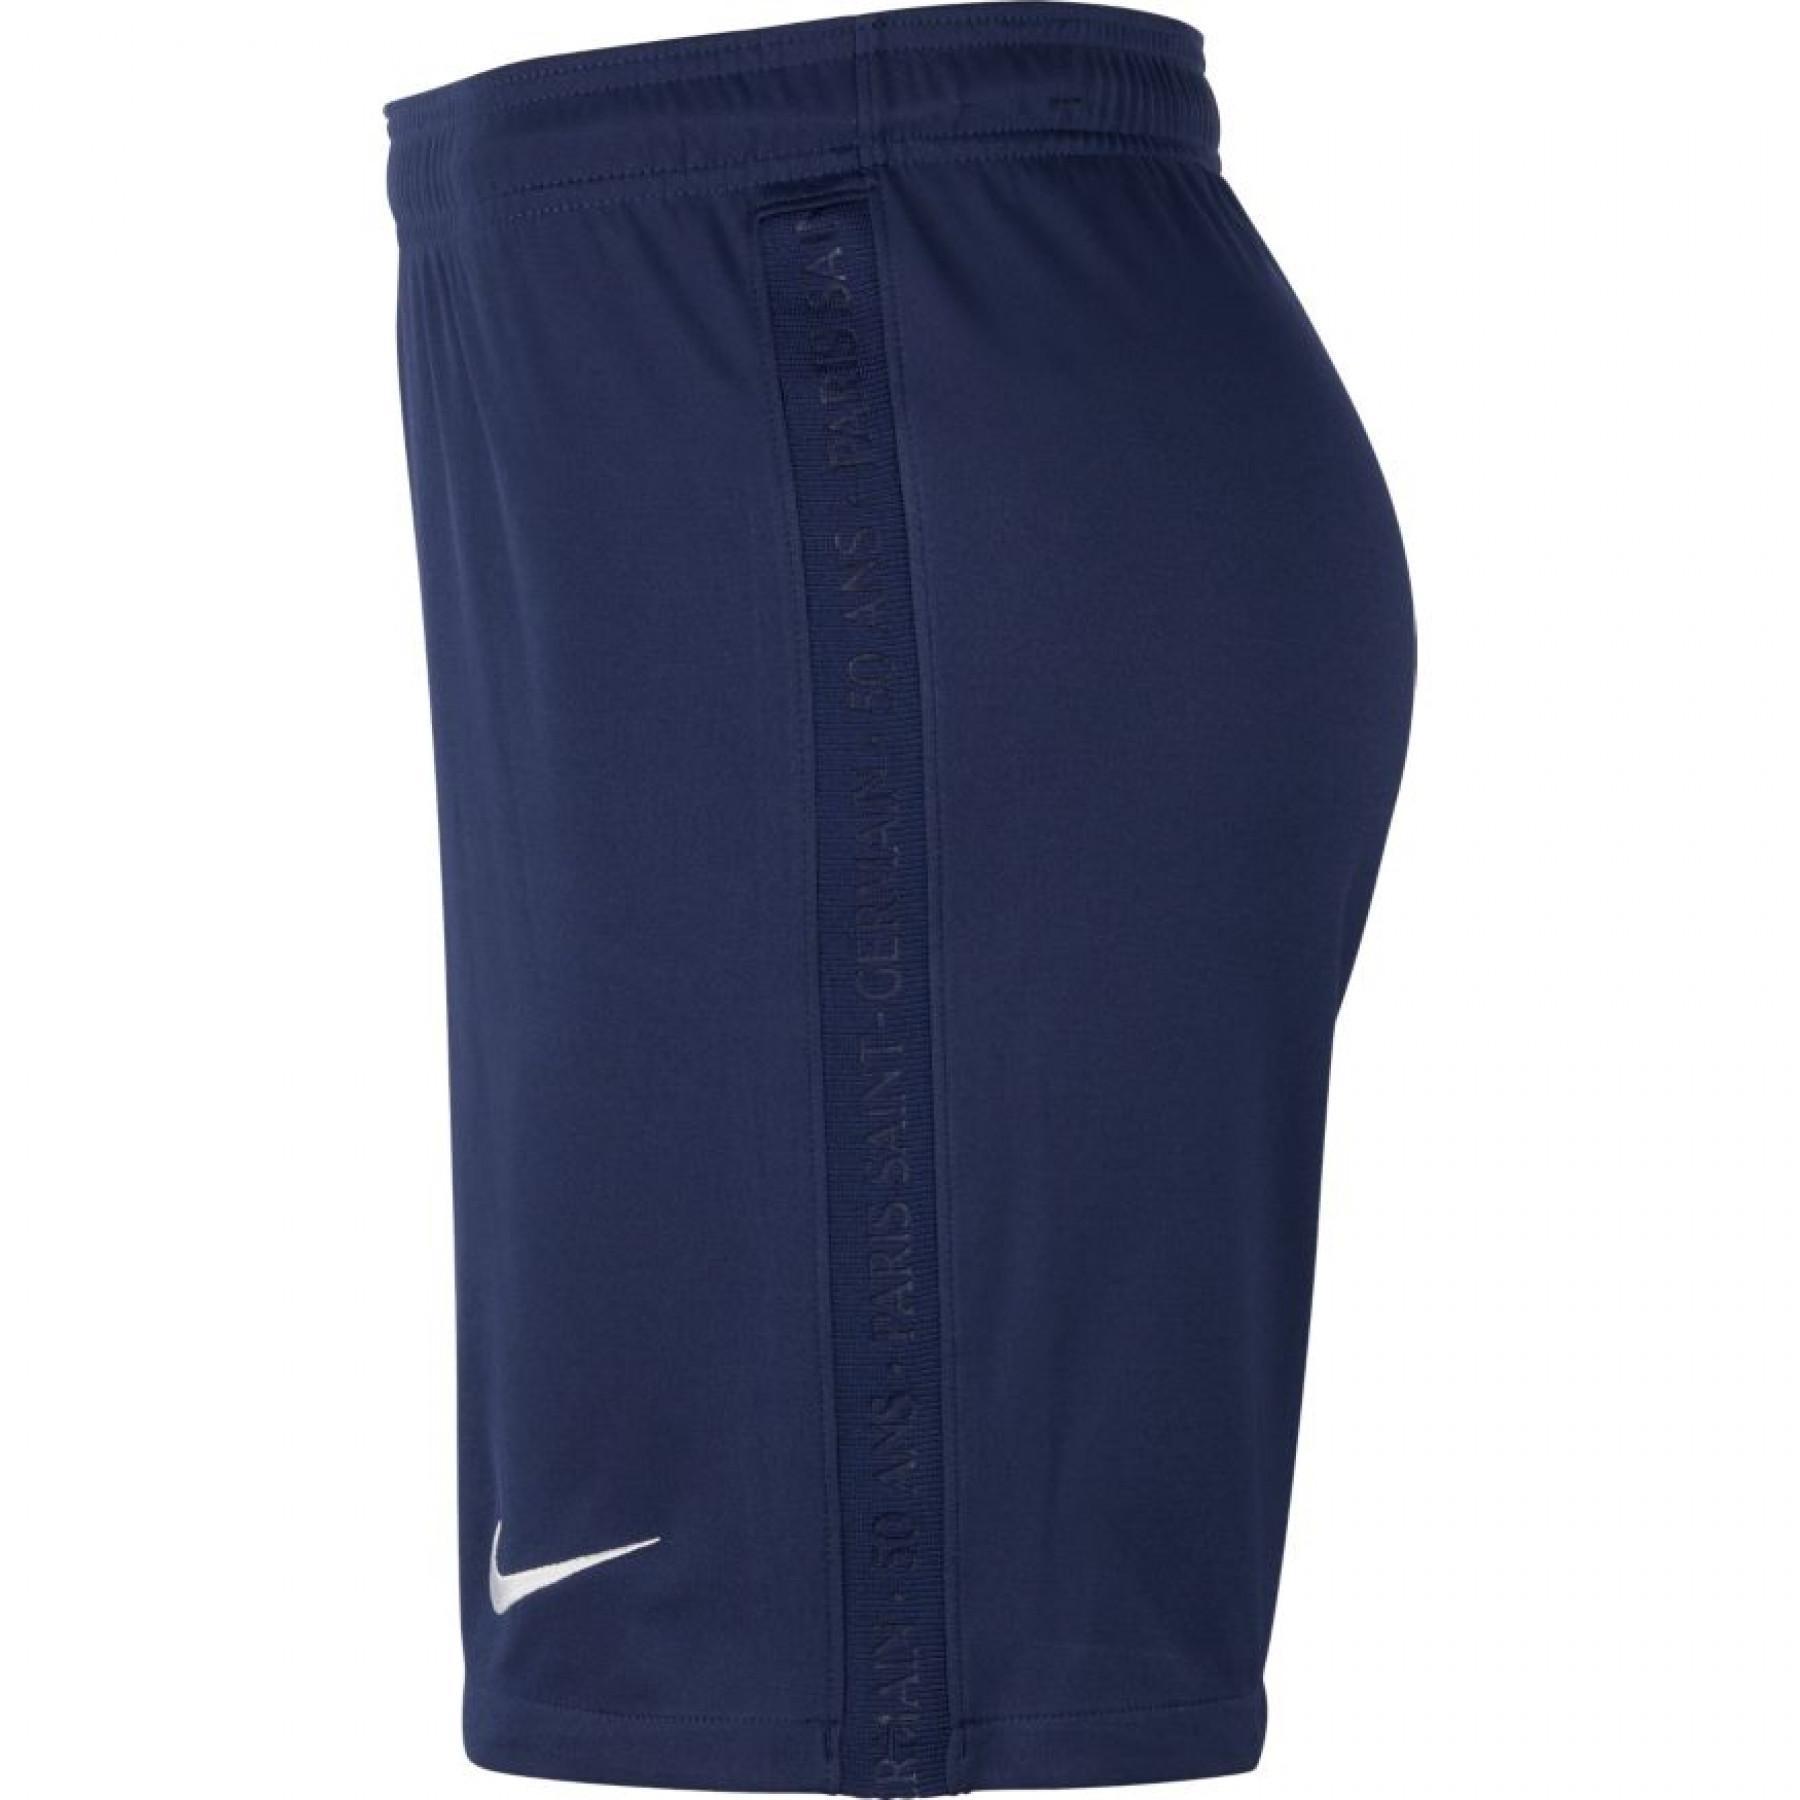 Pantalones cortos para el hogar PSG 2020/21